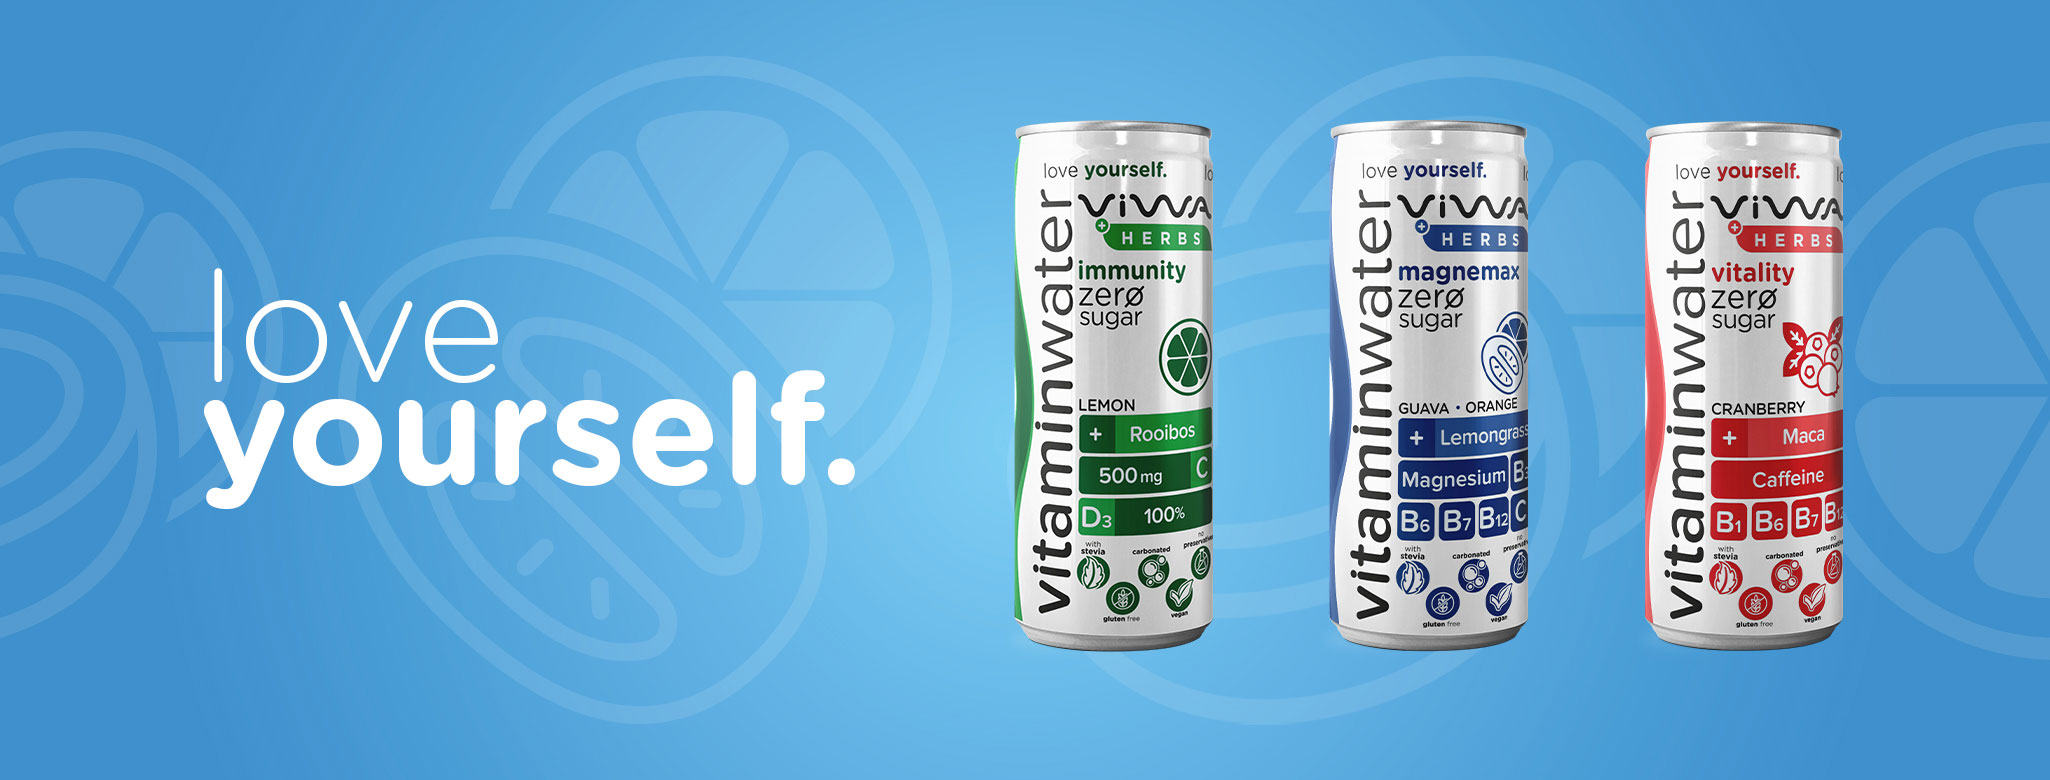 VIWA vitaminwater - Slide